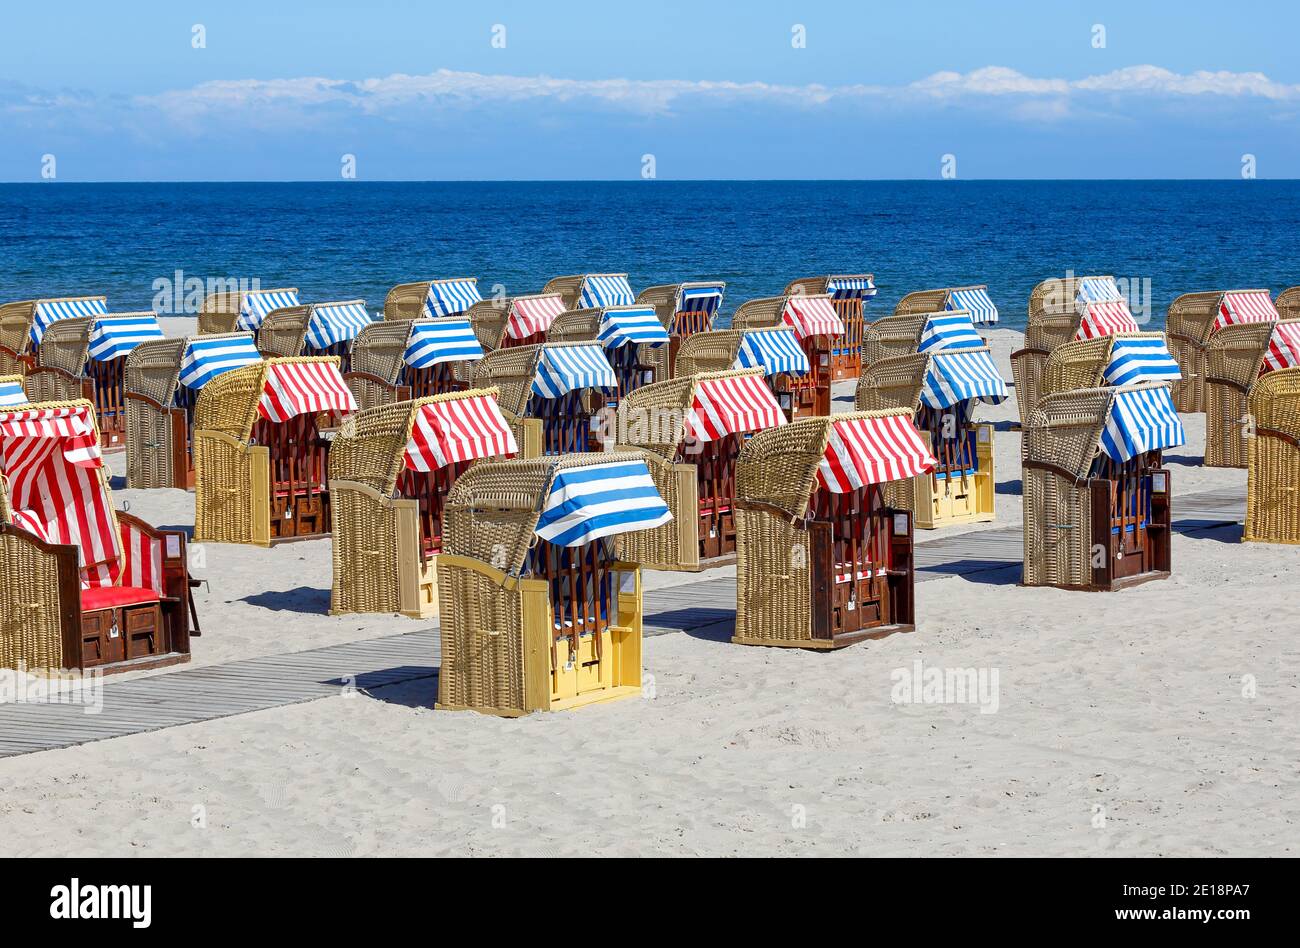 Travemünde ist ein gut frequentierter Strand. Liegestühle sind bereit für die Sommersaison - es gibt mehr als 1000. Stockfoto